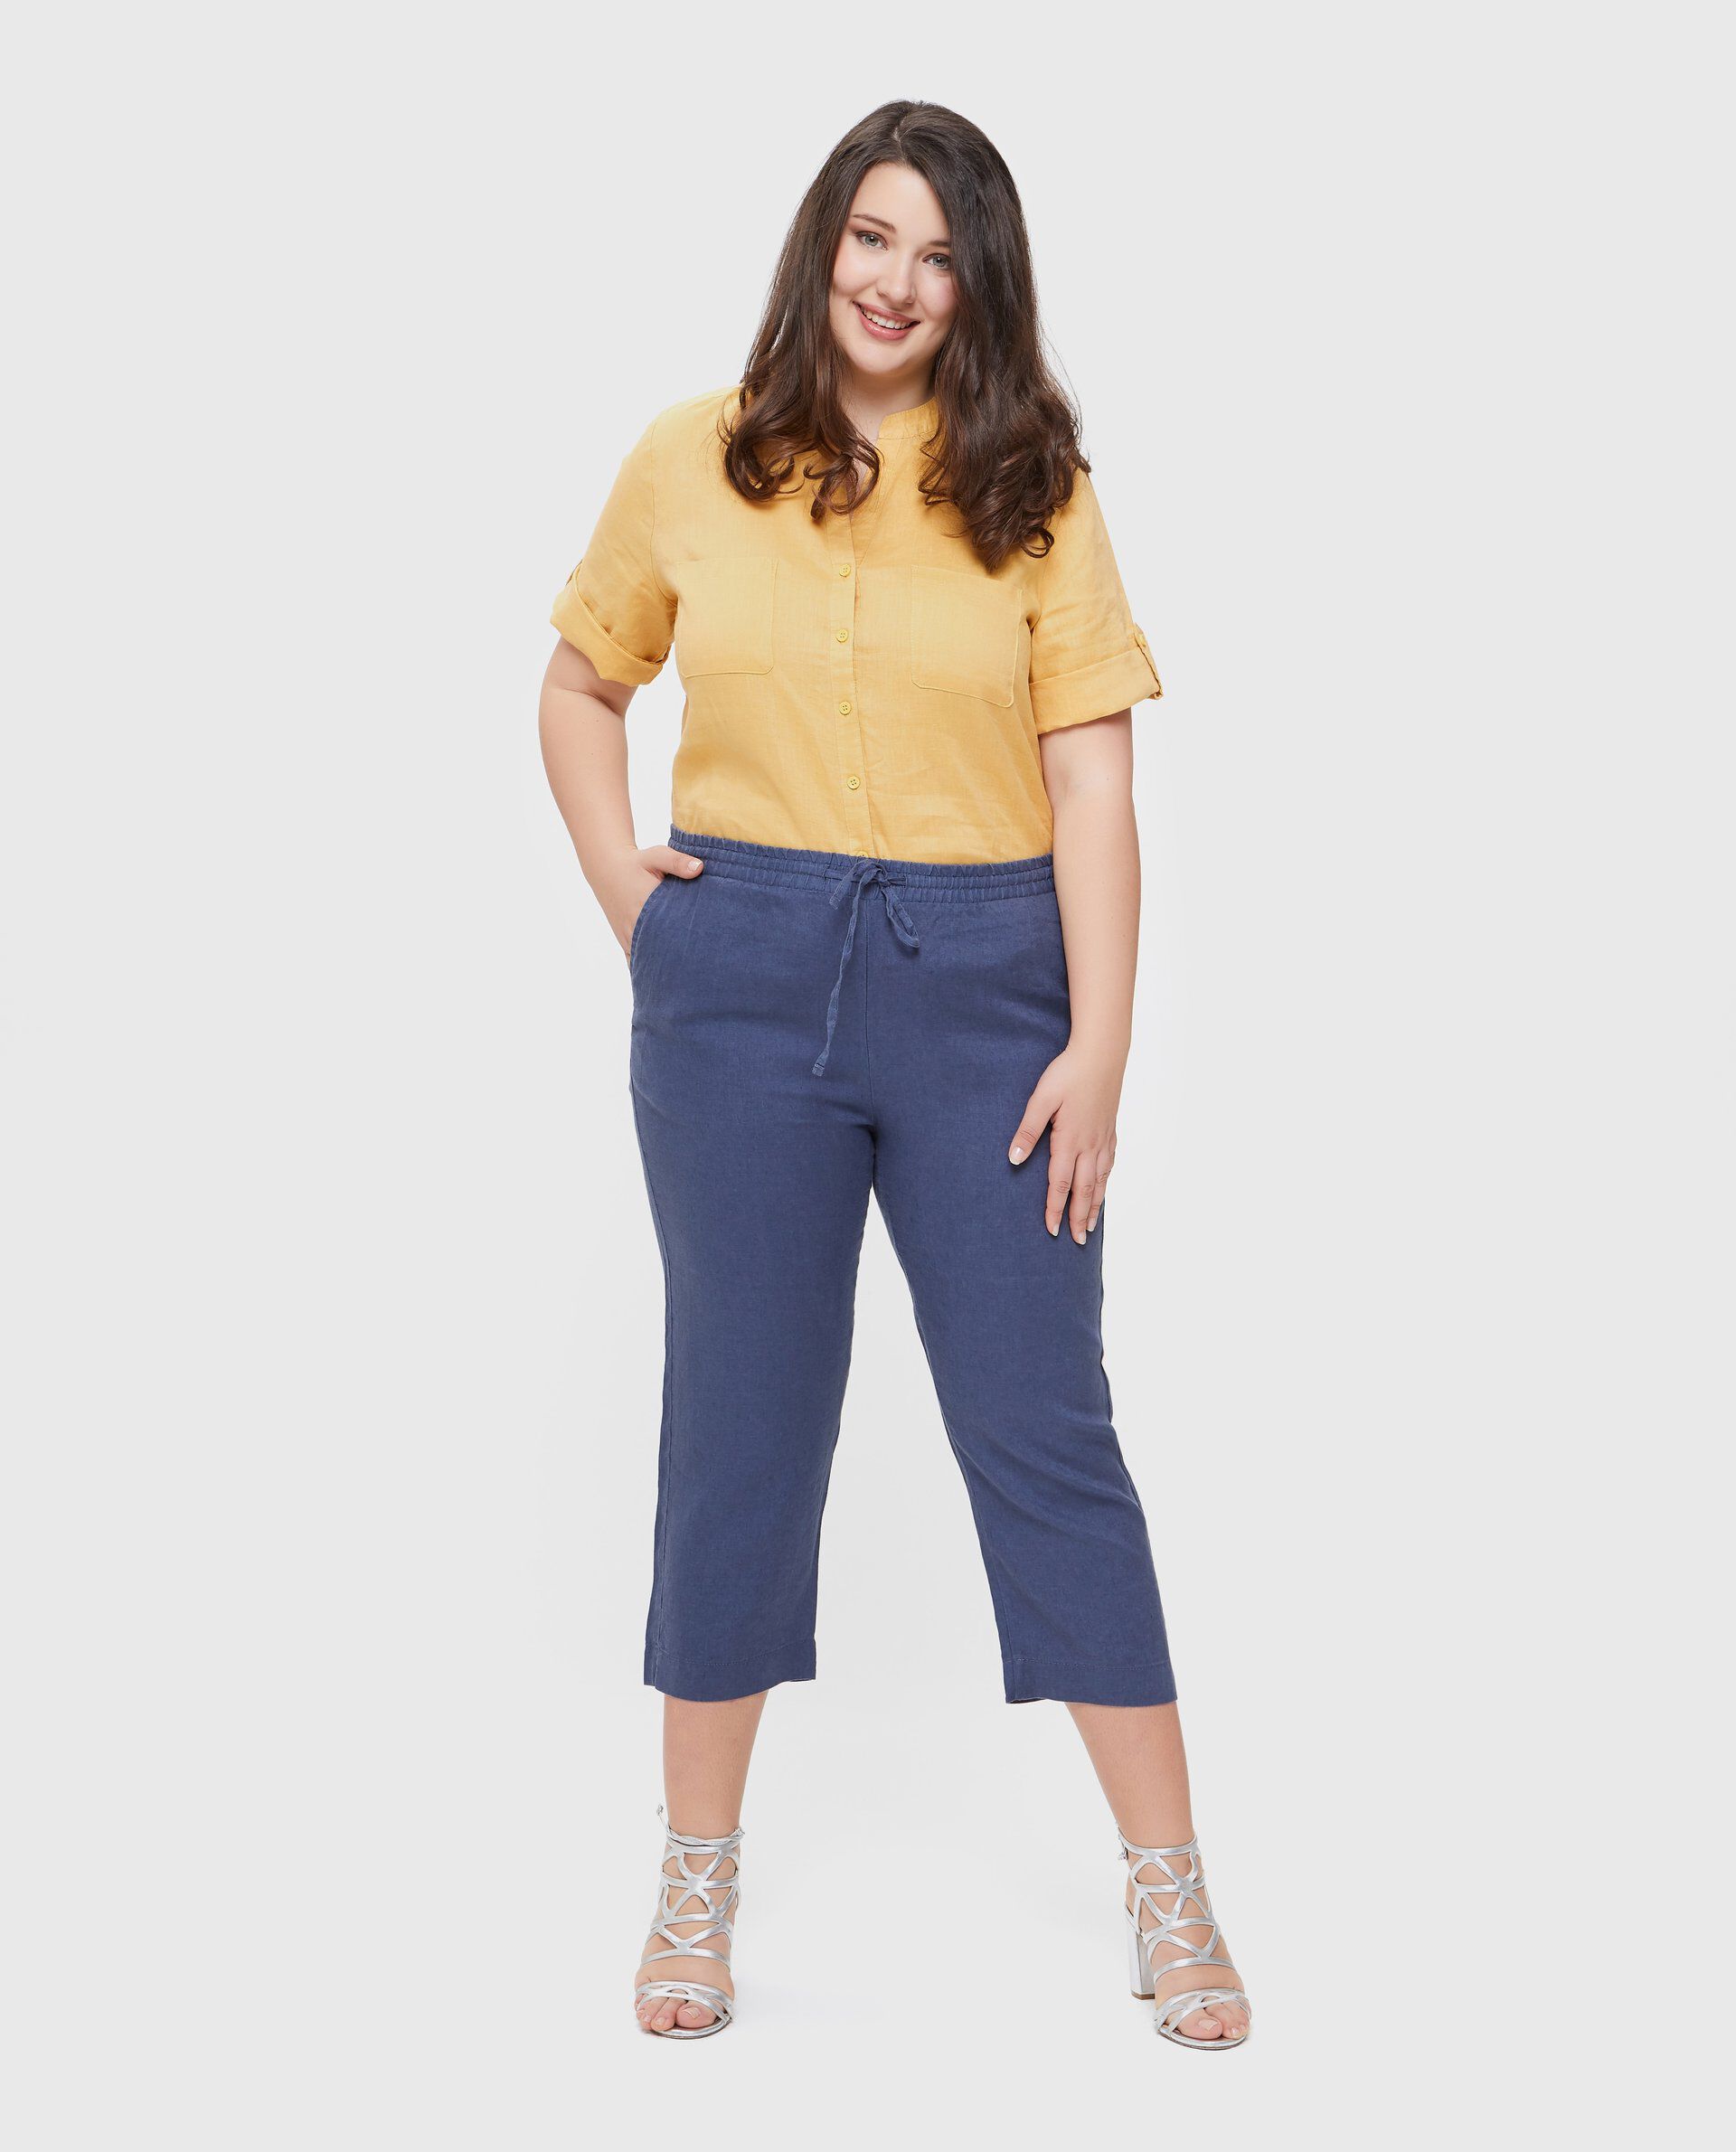 Pantaloni in puro lino modello crop Curvy donna